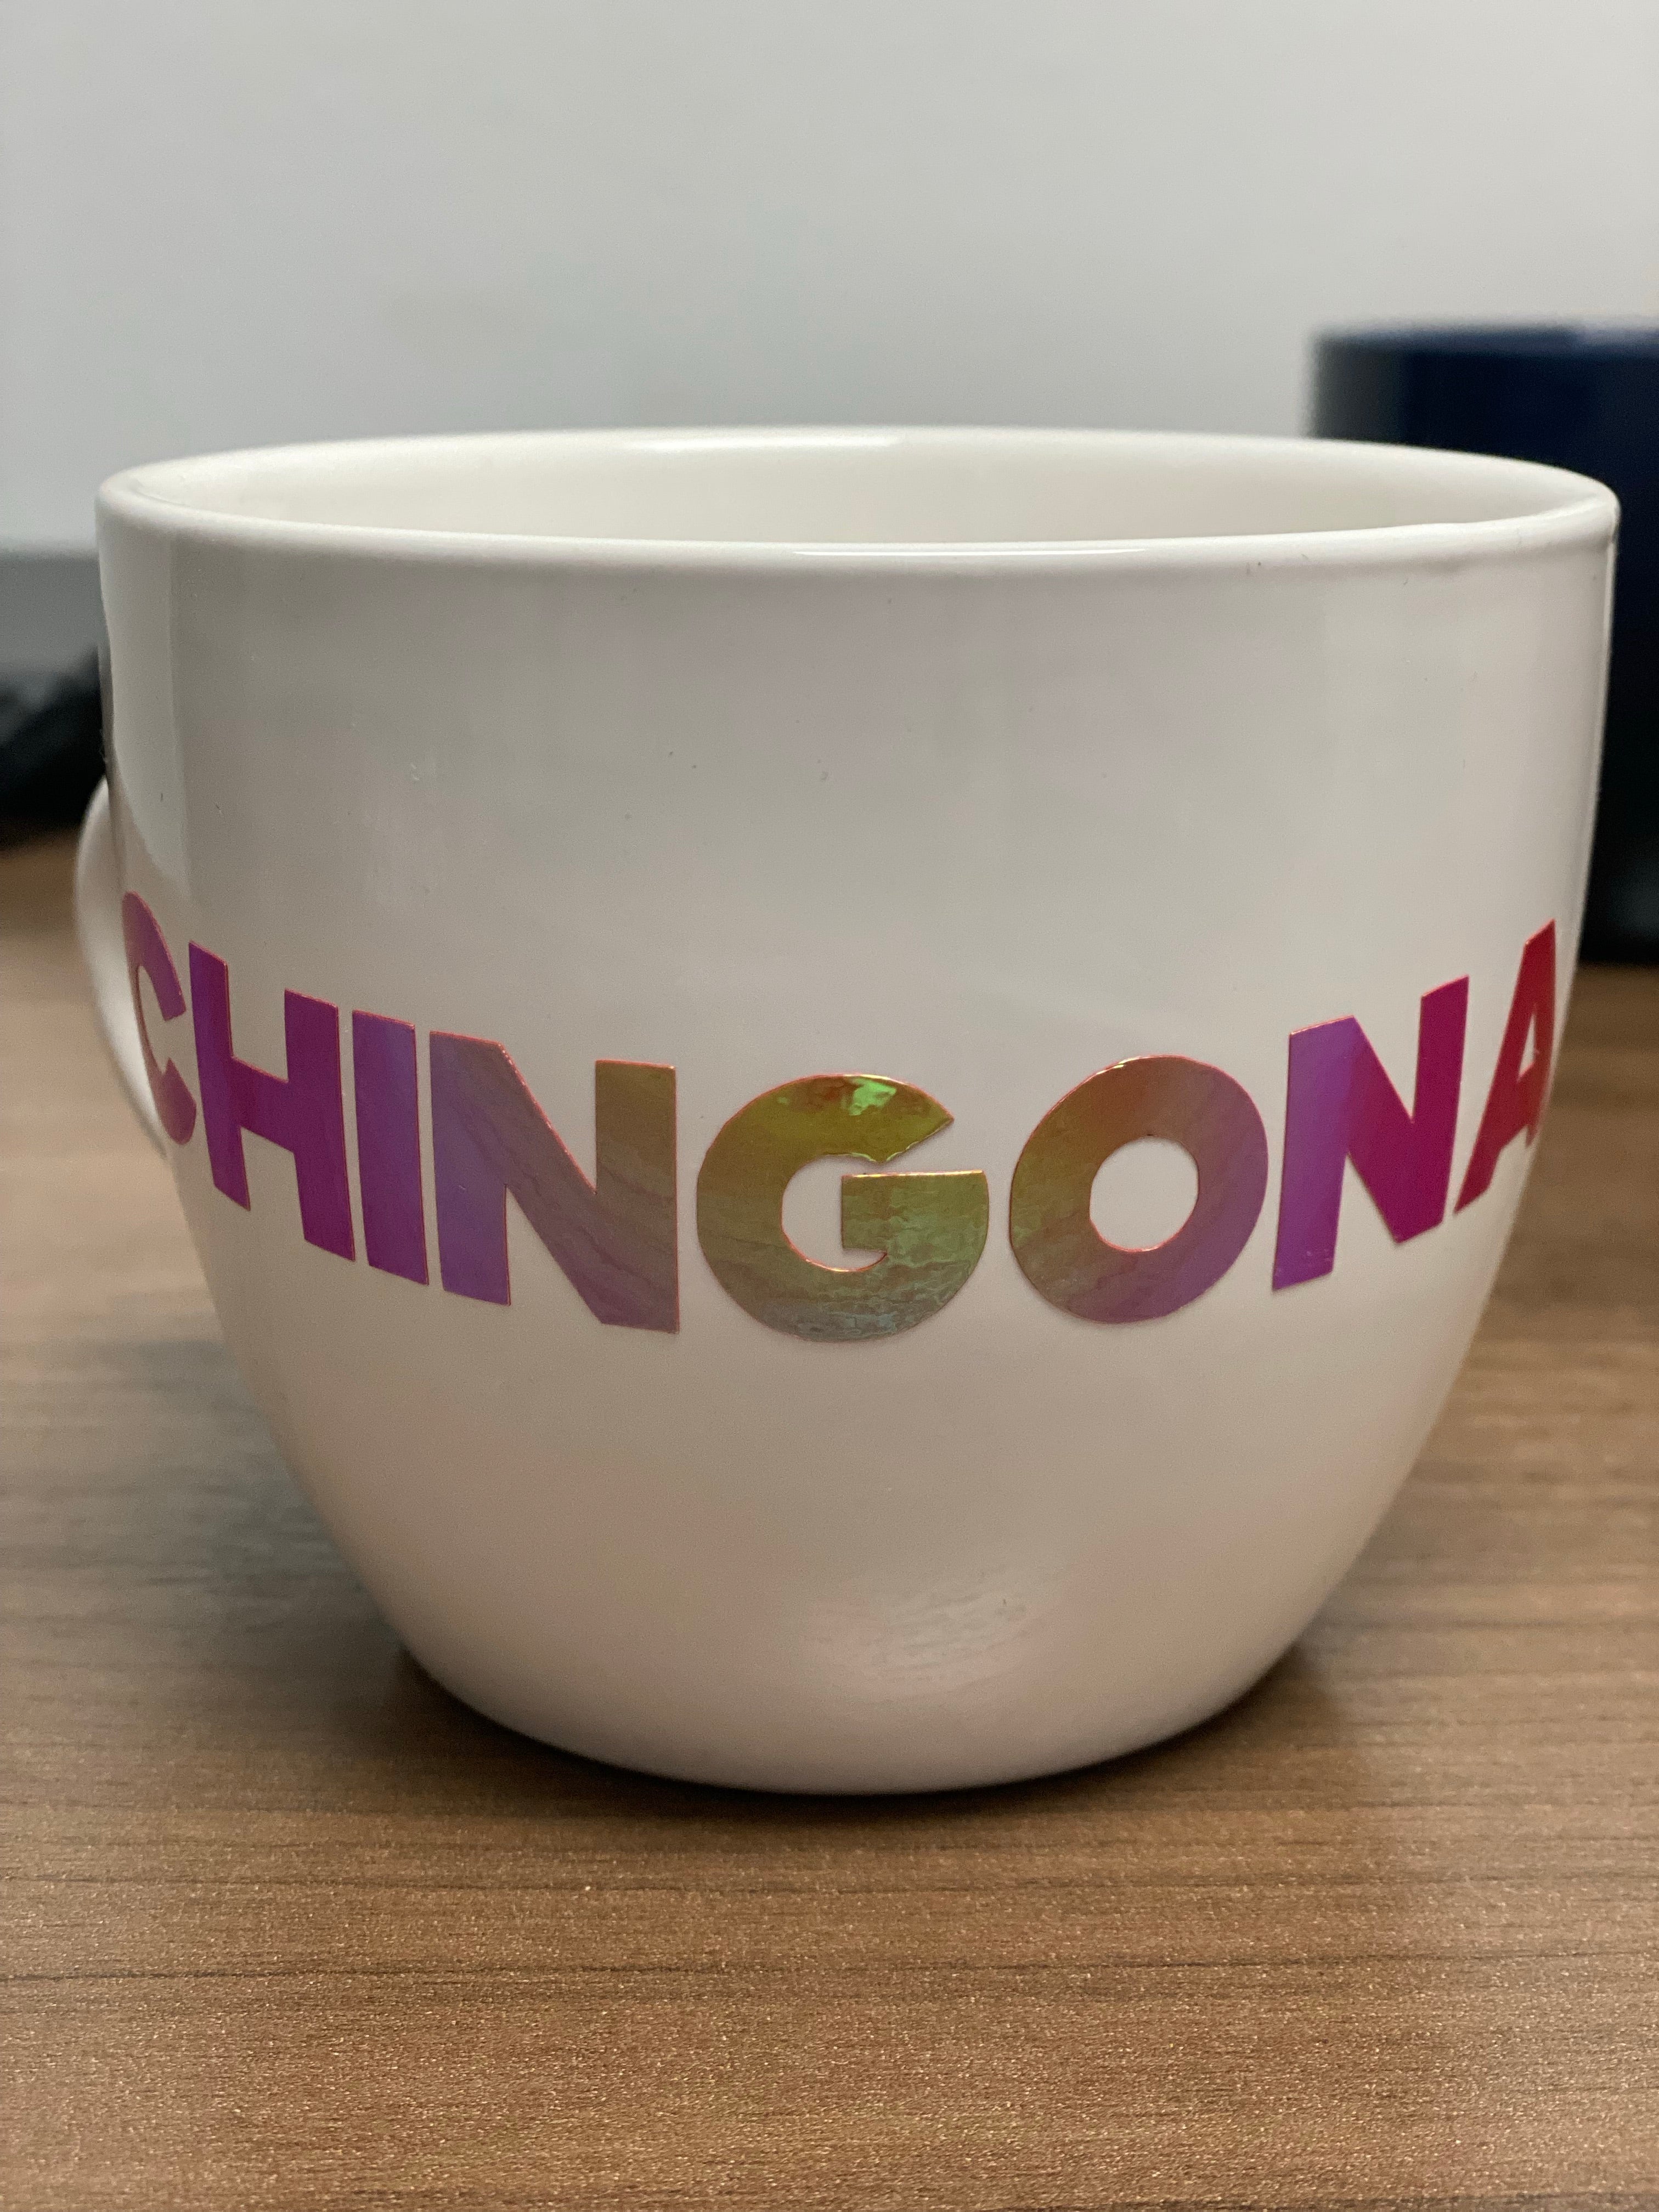 Chingona Cup